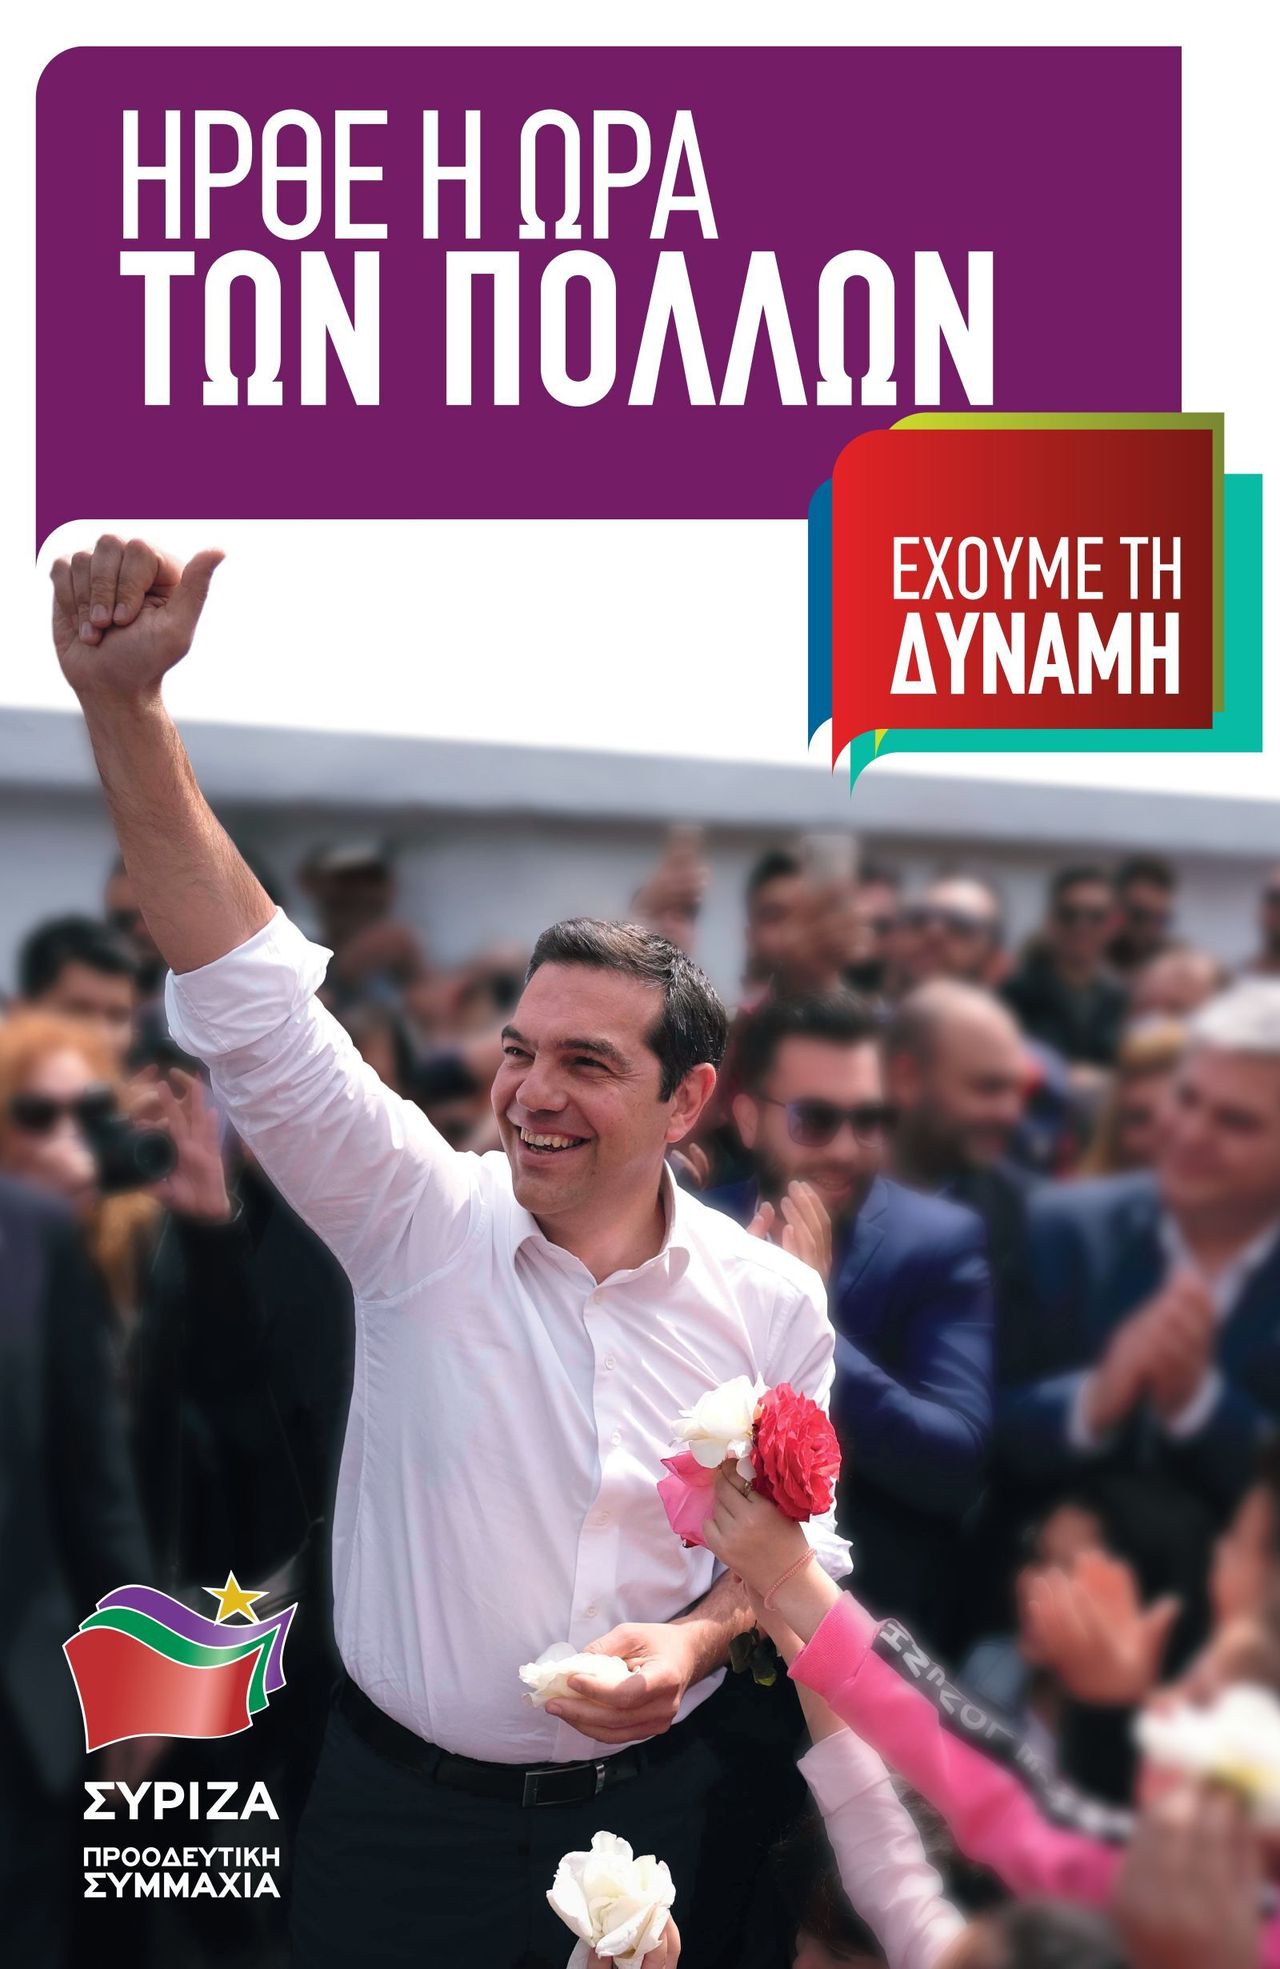 ΣΥΡΙΖΑ ΠΡΟΟΔΕΥΤΙΚΗ ΣΥΜΜΑΧΙΑ: βασική αφίσα Ευρωεκλογών